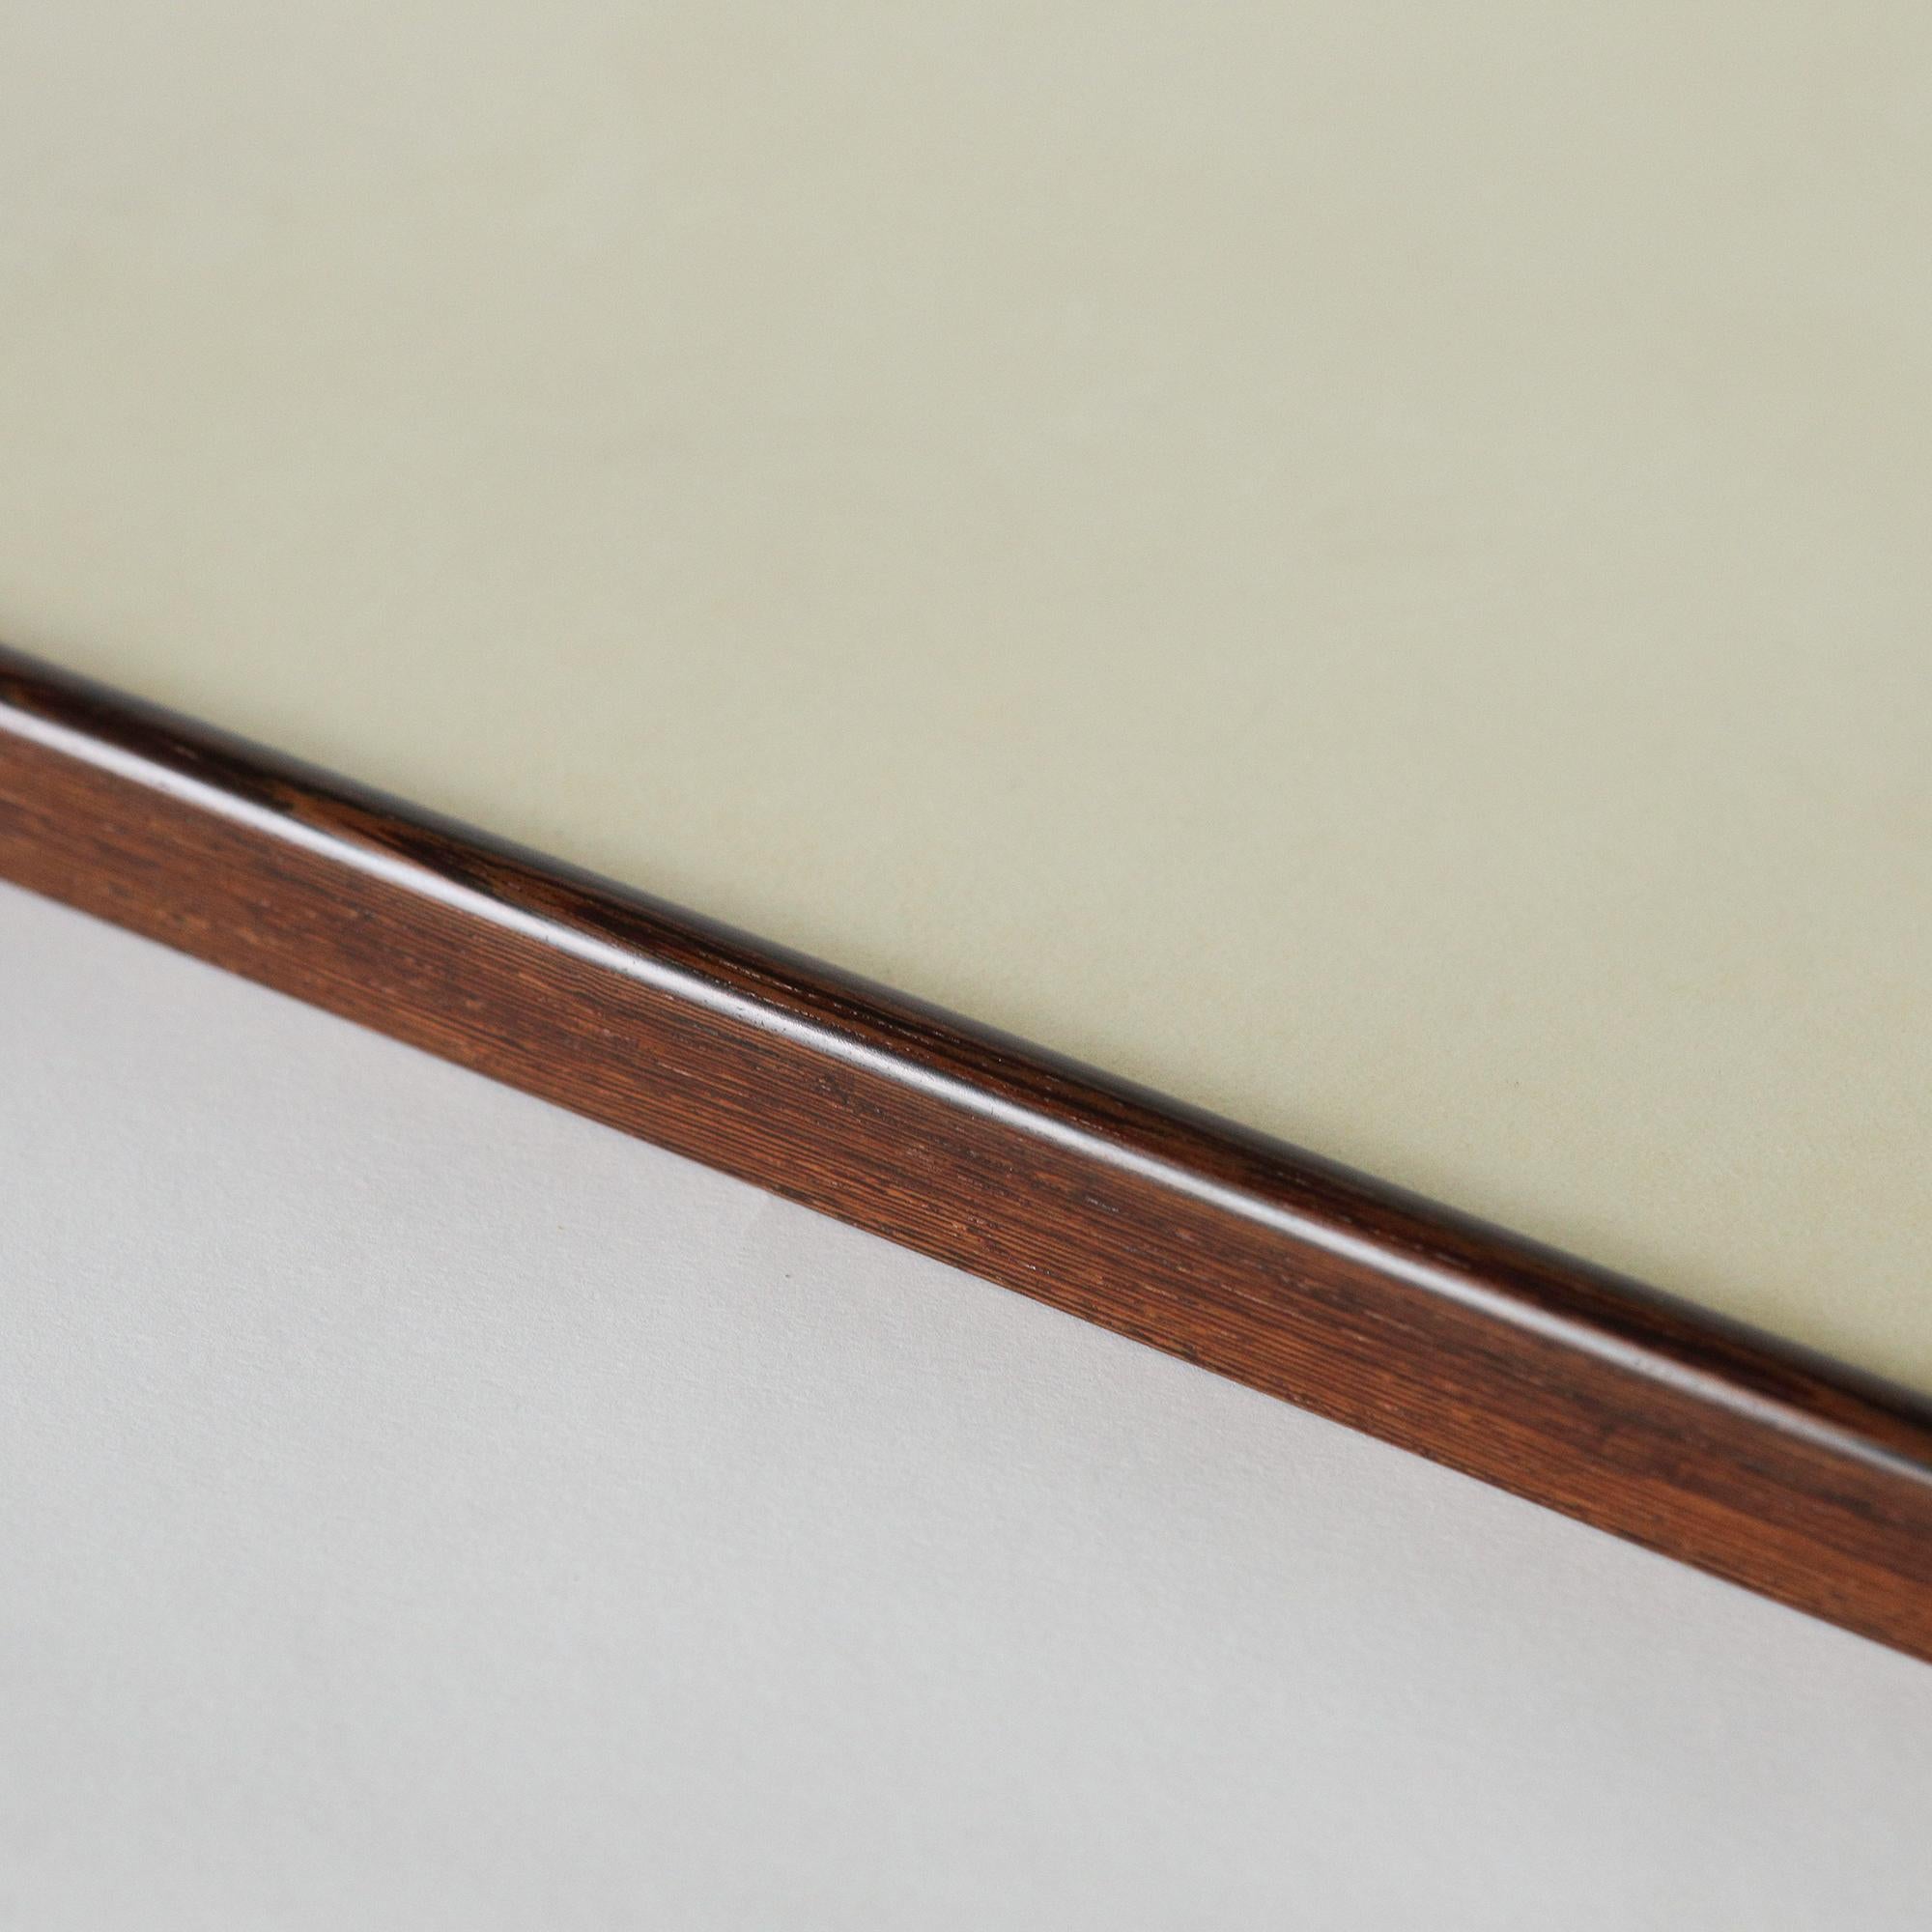 Das Tablett Wing ist eine Kombination aus zwei wunderschönen natürlichen Materialien - Rohleder und Hühnerflügelholz. Das lebhaft gemaserte chinesische Holz wurde fachmännisch zu geschwungenen flügelartigen Griffen geschnitzt. 